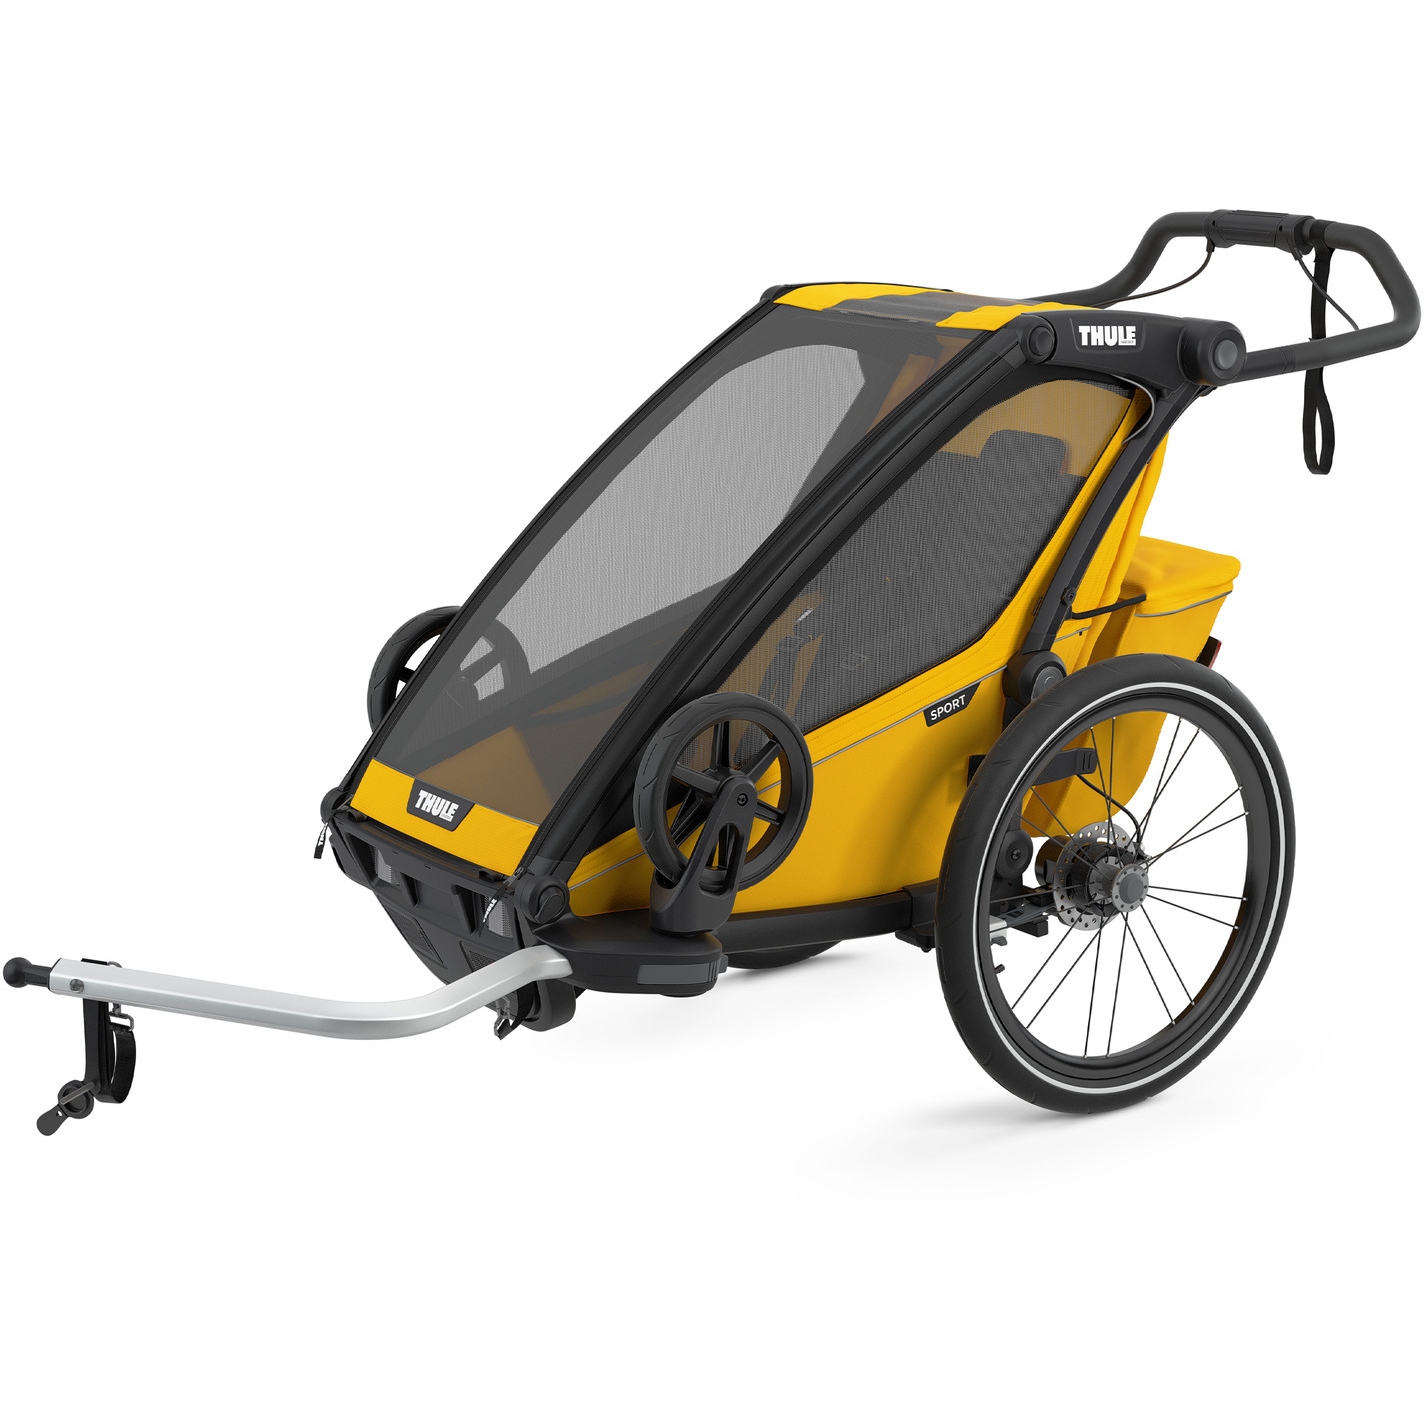 Produktbild von Thule Chariot Sport 1 - Fahrradanhänger für 1 Kind - spectra yellow